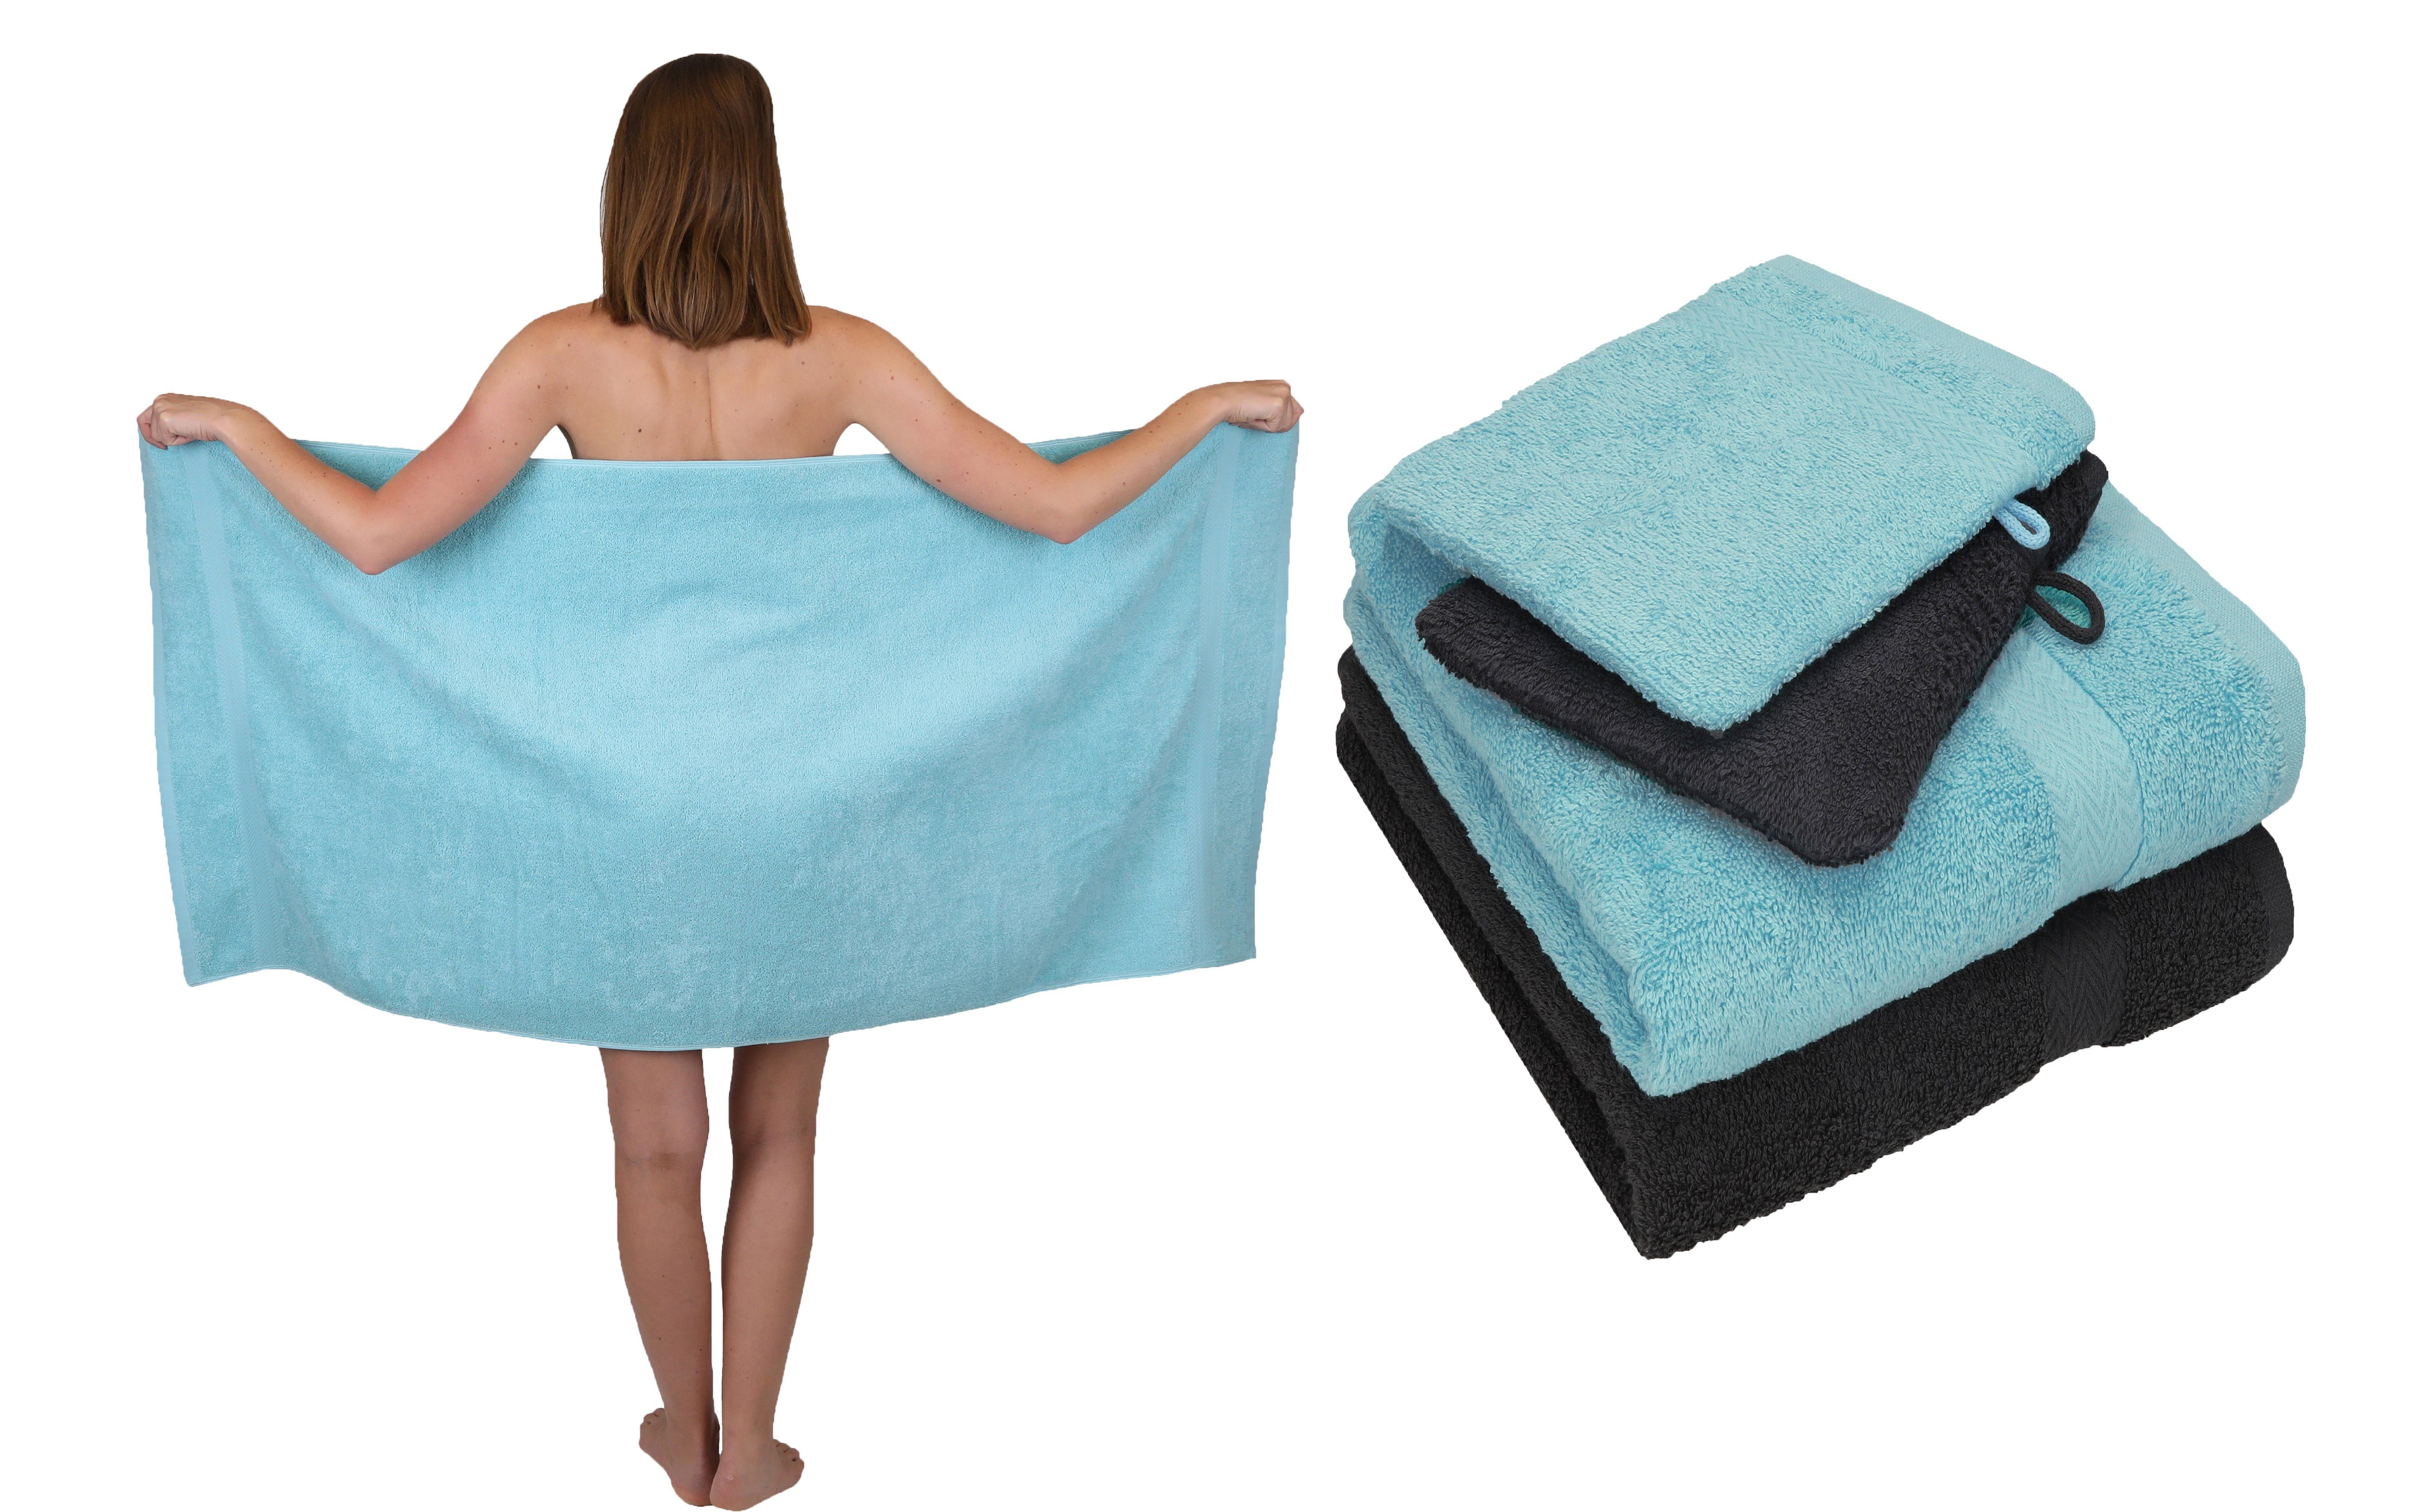 Betz Handtuch Set 5 TLG. 100% Waschhandschuhe, Single Set 2 Handtuch Baumwolle 2 Pack Baumwolle 1 Duschtuch Handtücher ocean-graphit grau 100